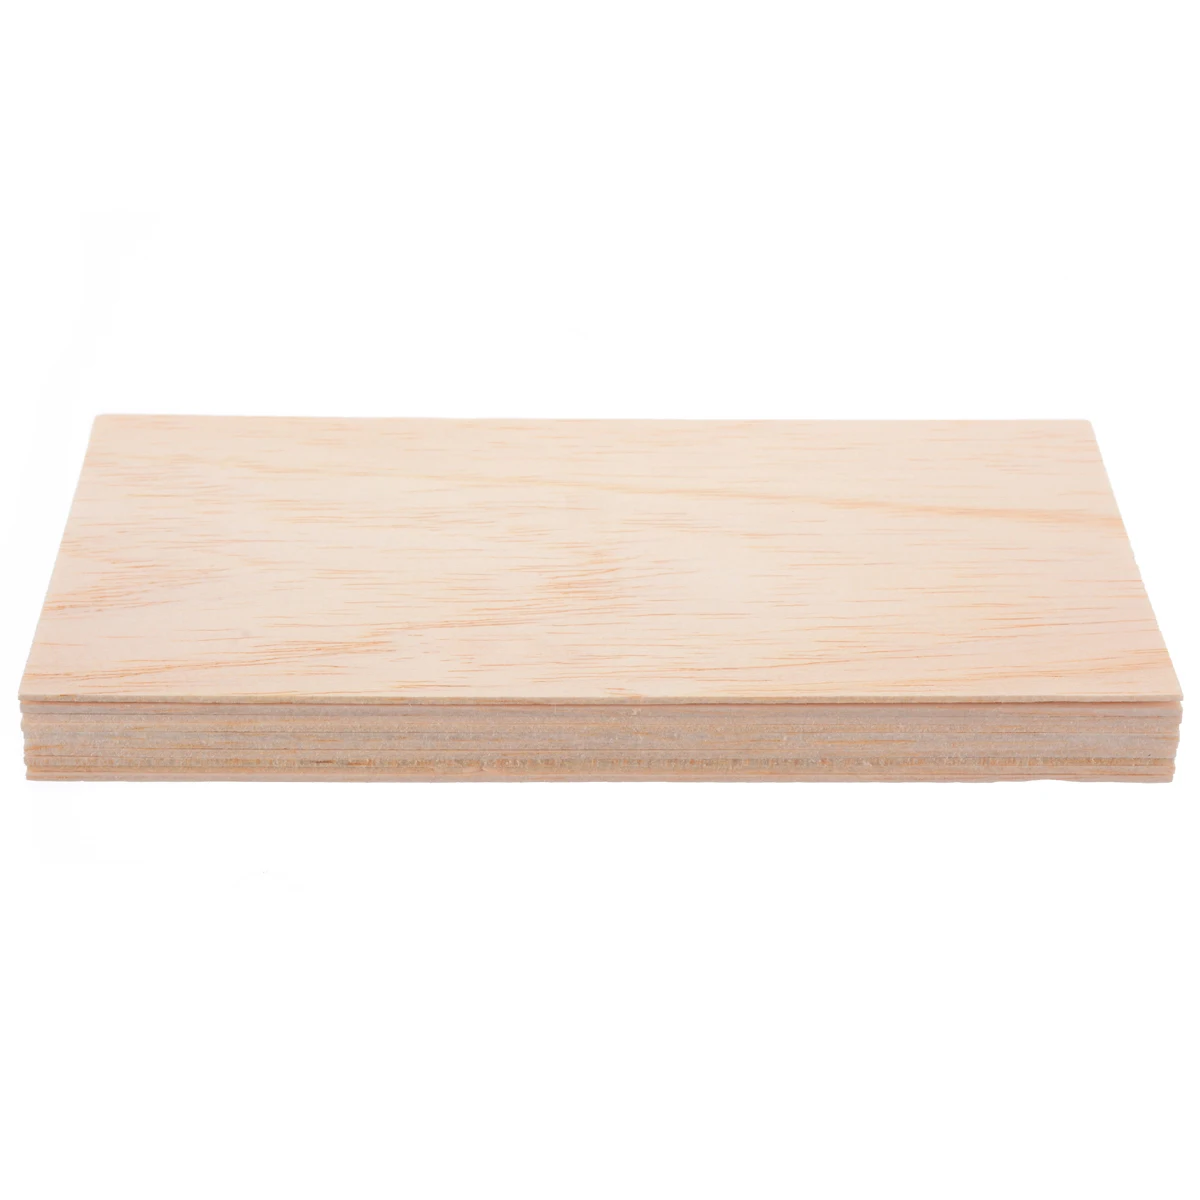 10 шт./компл. пробкового дерева простыни деревянная тарелка набор «сделай сам» для дома корабль самолет модель лодки игрушки корабль 200*100*1,5 мм